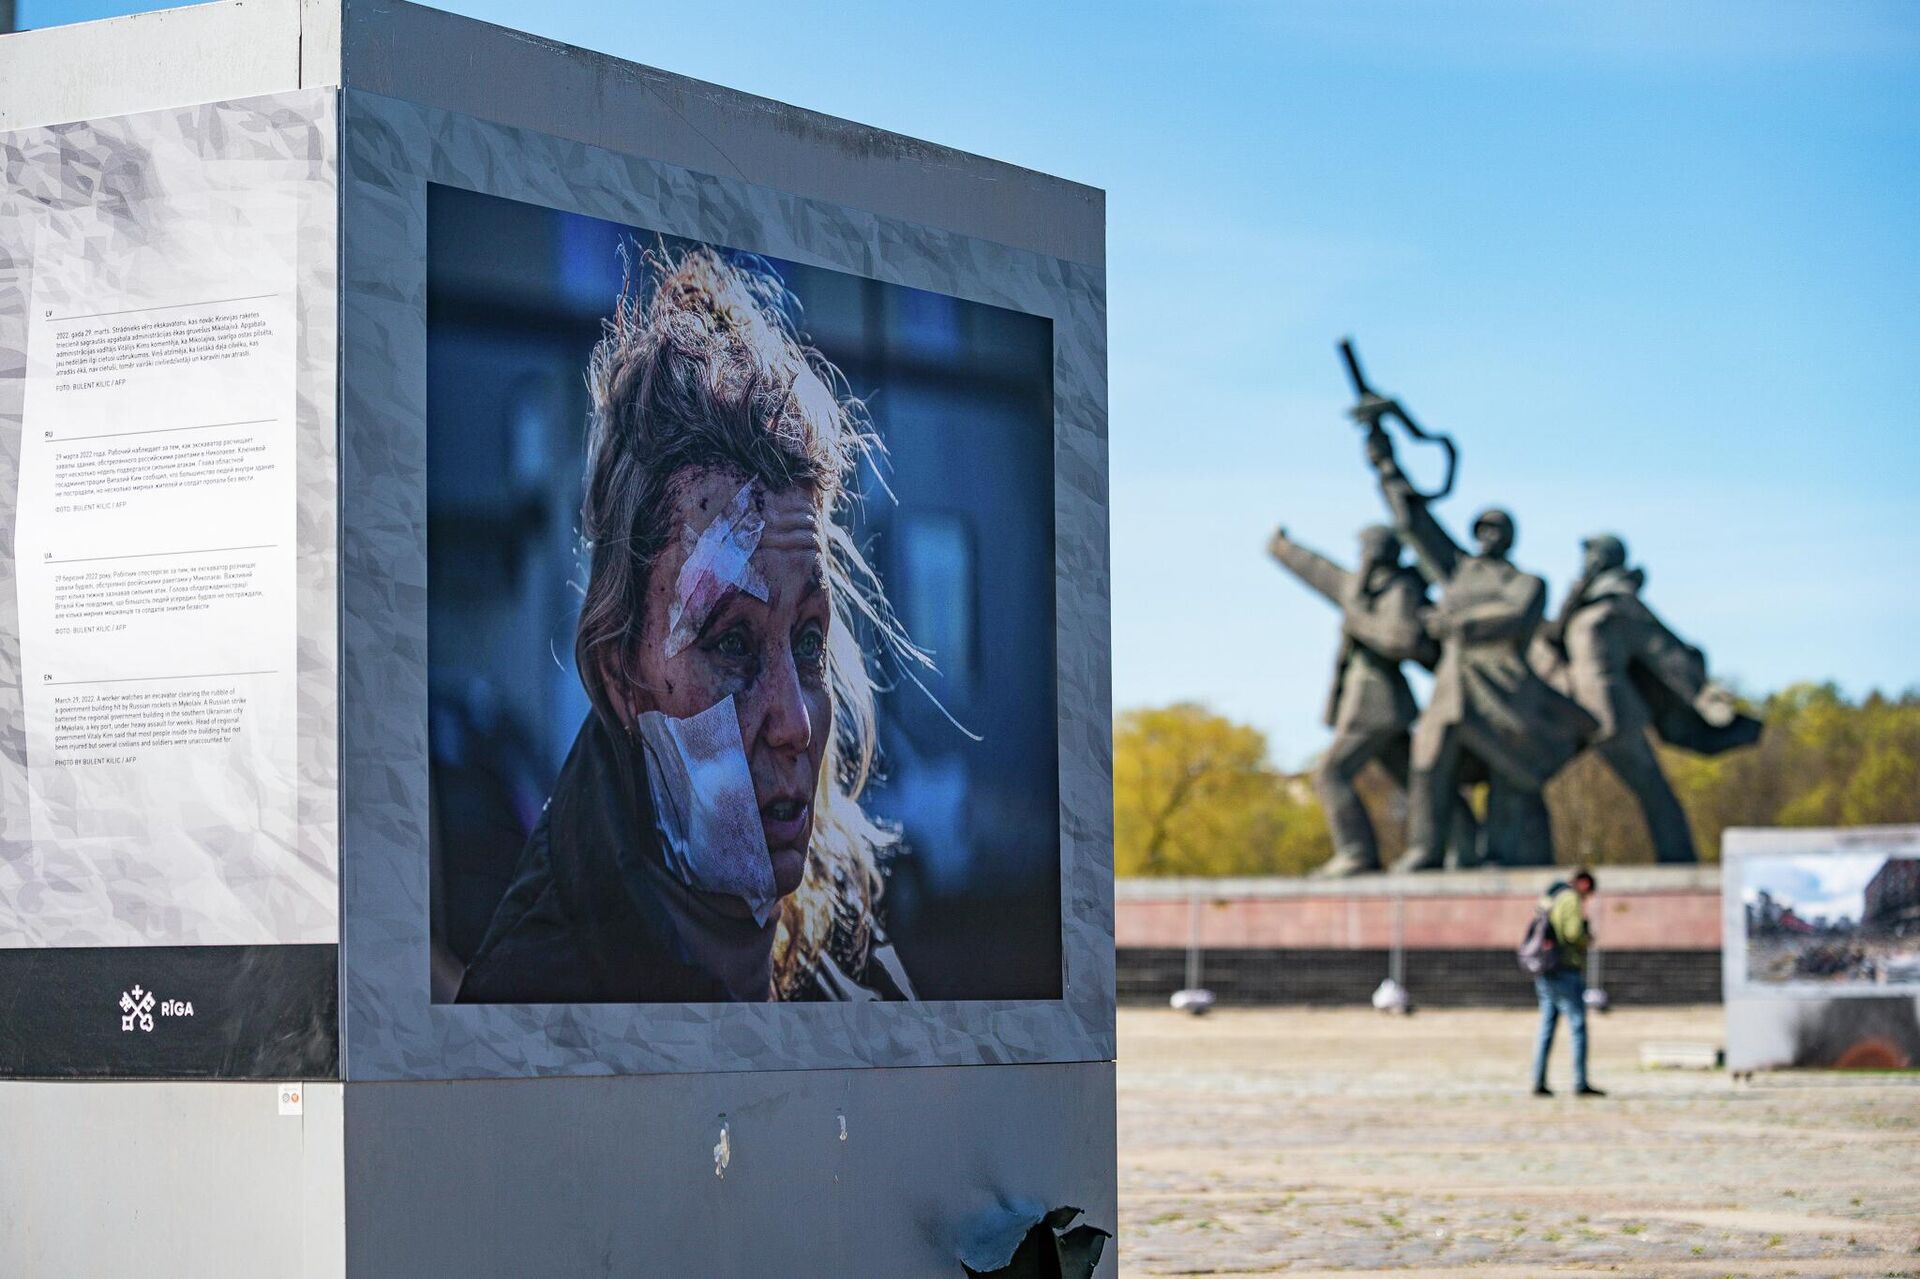 Рижские власти организовали у памятника Освободителям фотовыставку, посвященную событиям на Украине - Sputnik Латвия, 1920, 02.05.2022